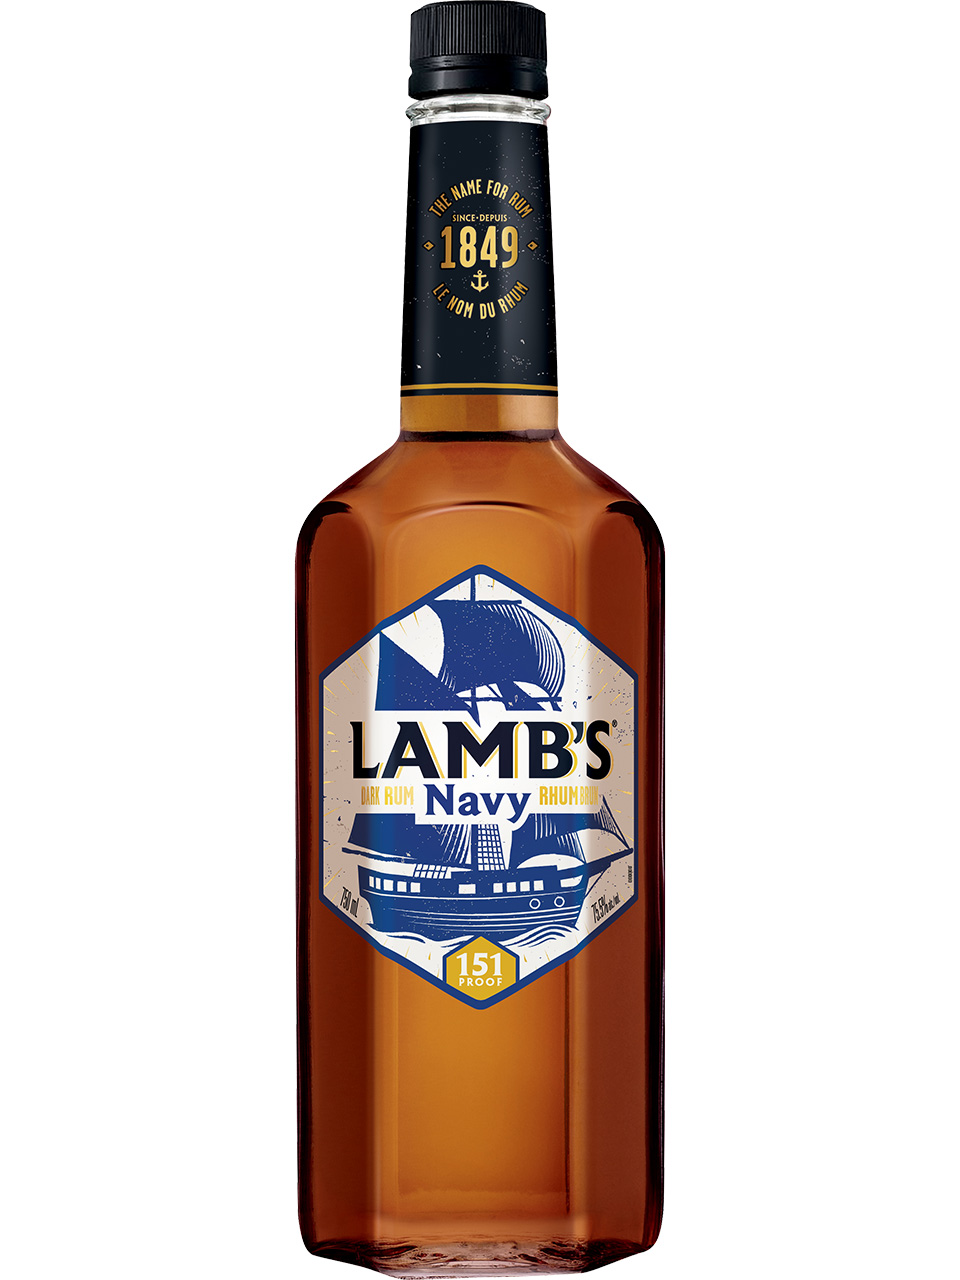 Lamb's Navy Overproof Rum